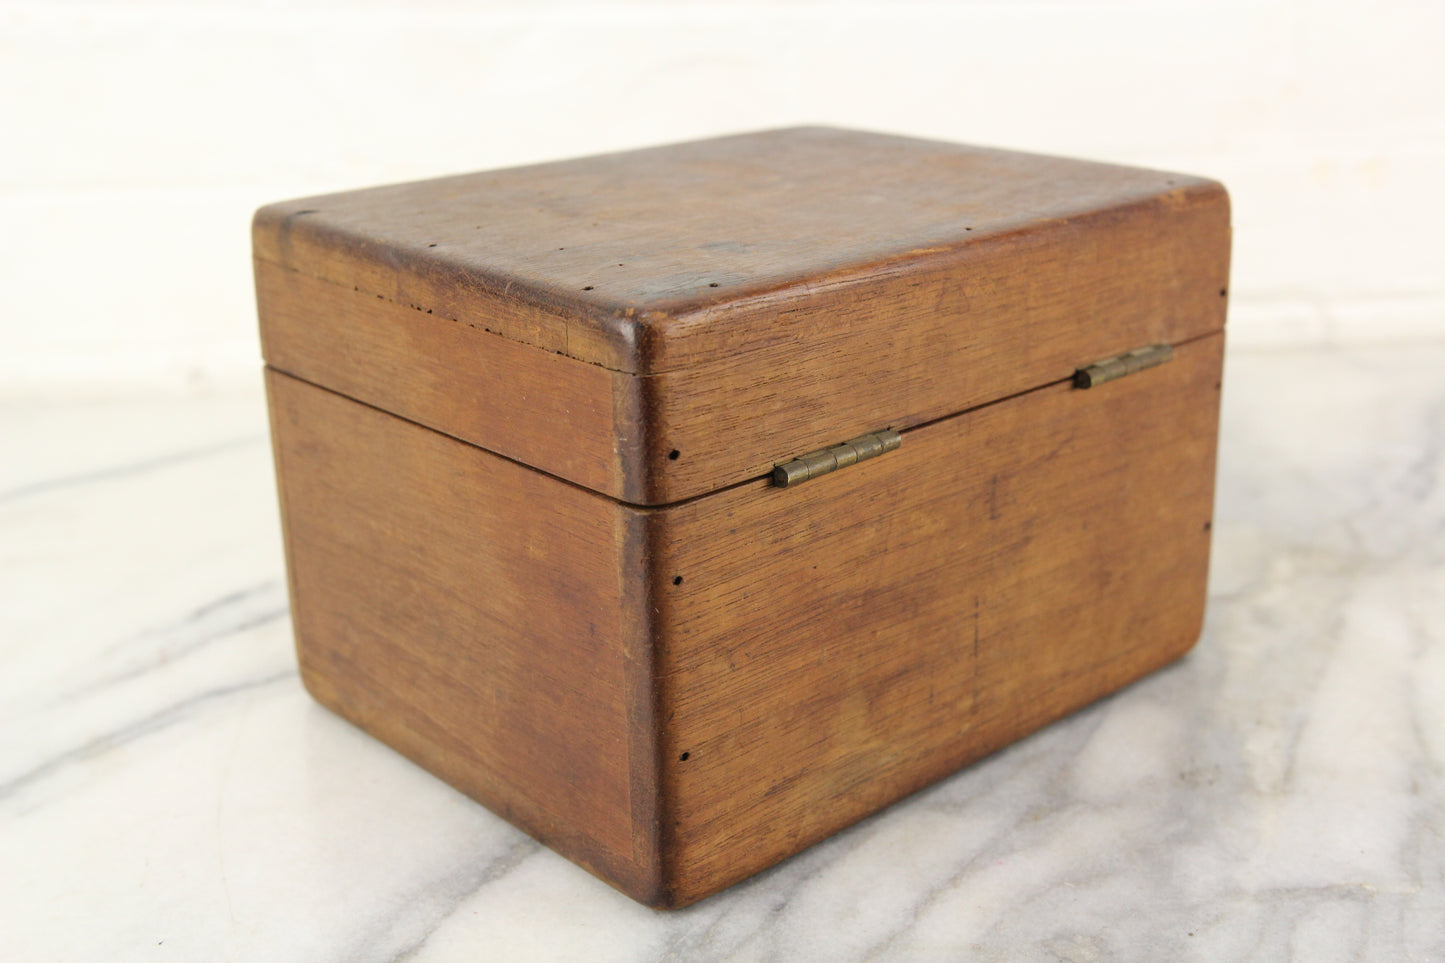 Wooden Storage Box - 7.5 x 5.75 x 5"